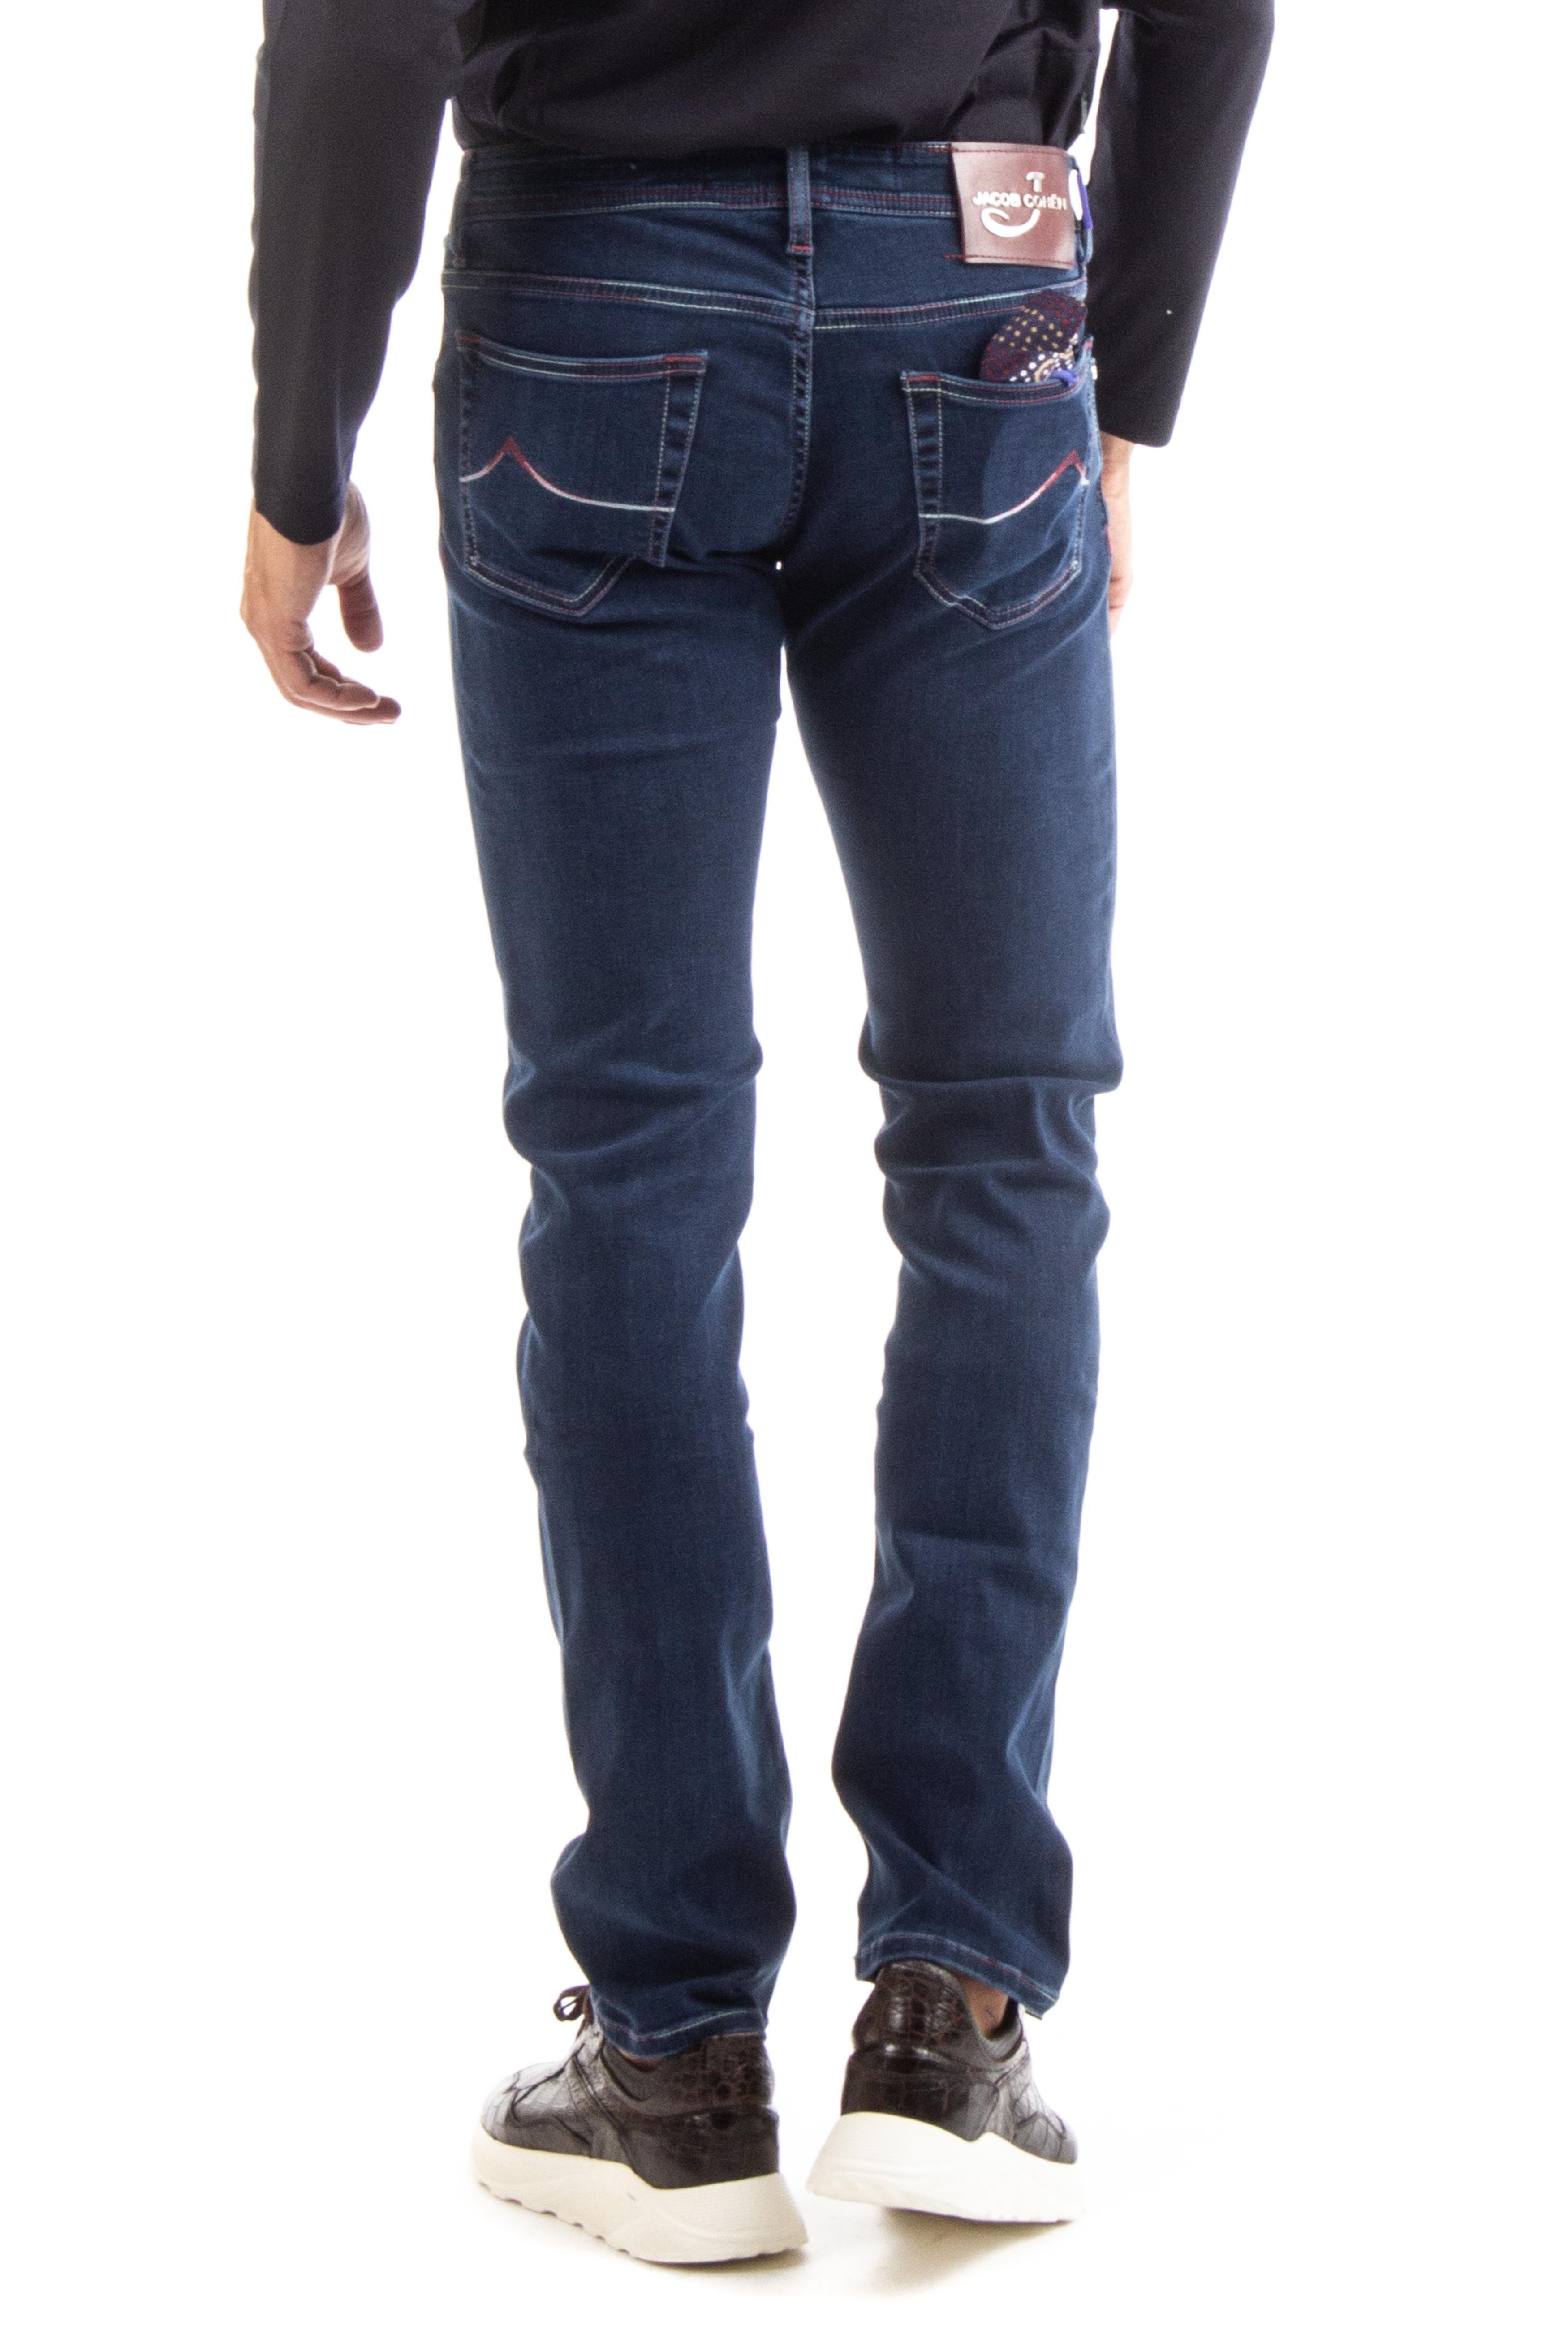 jacob cohen j622 comfort jeans